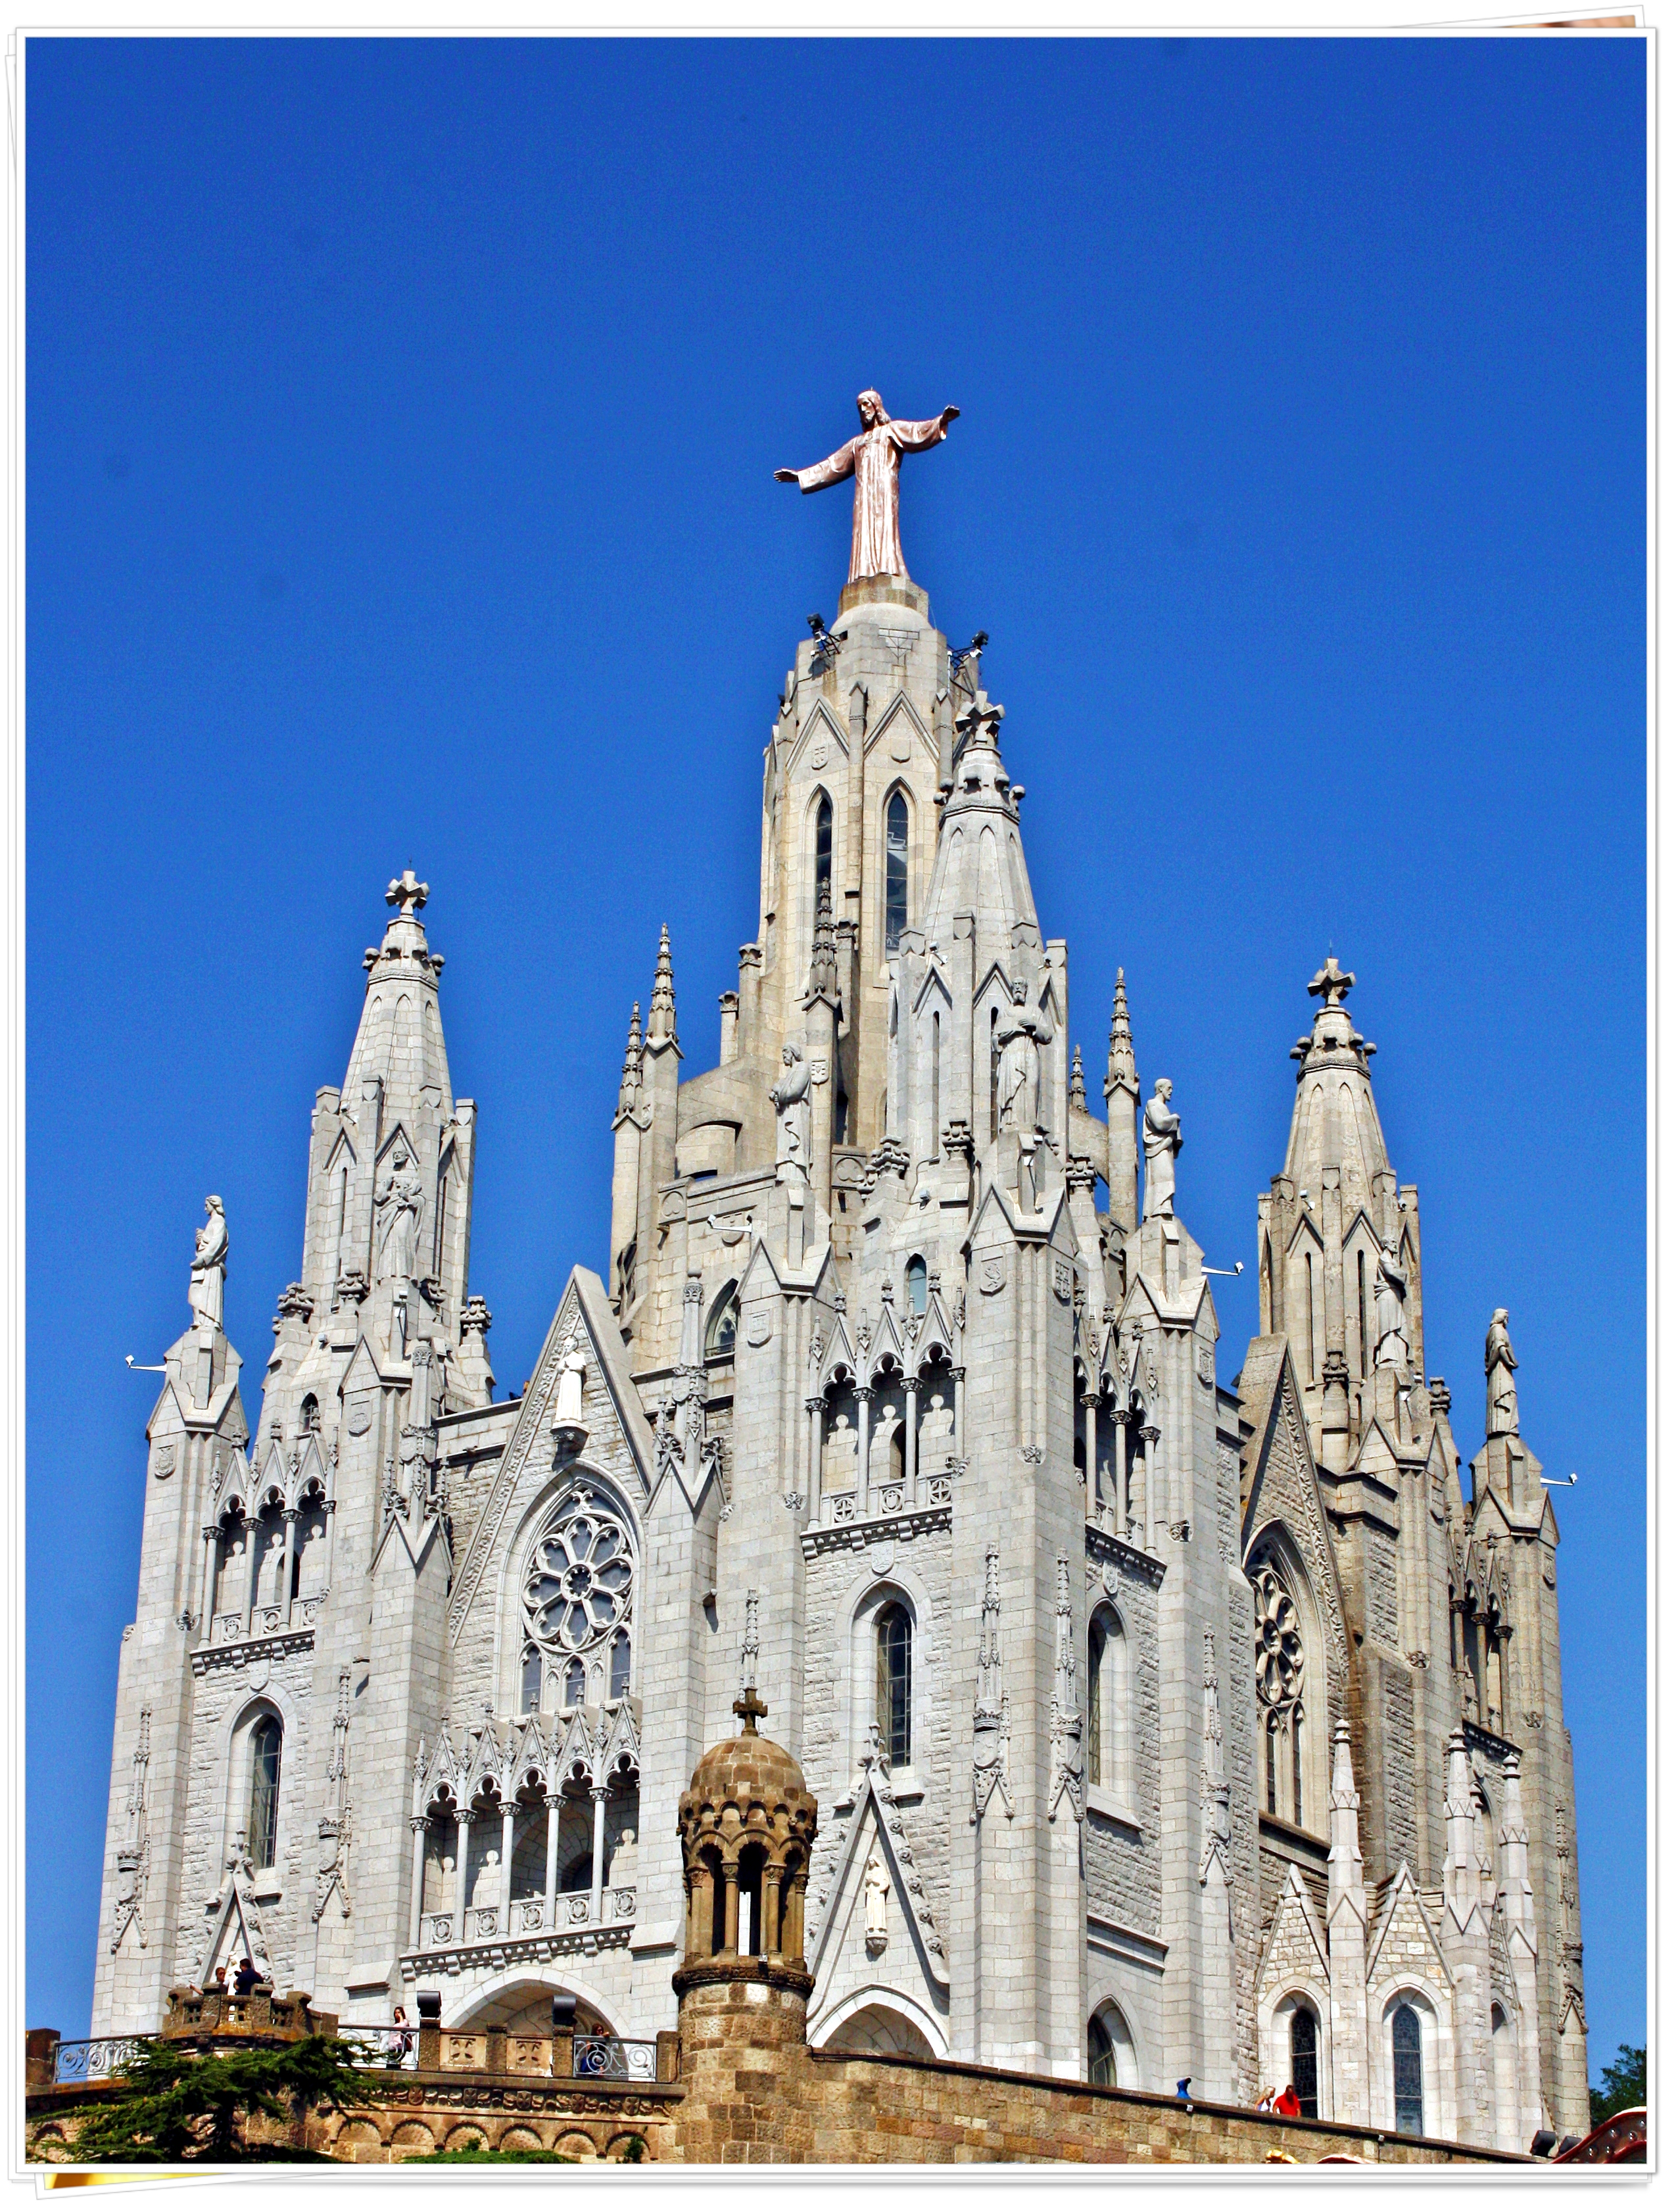 Sagrat Cor Church in Tibidabo - Barcelona, Spain 2013